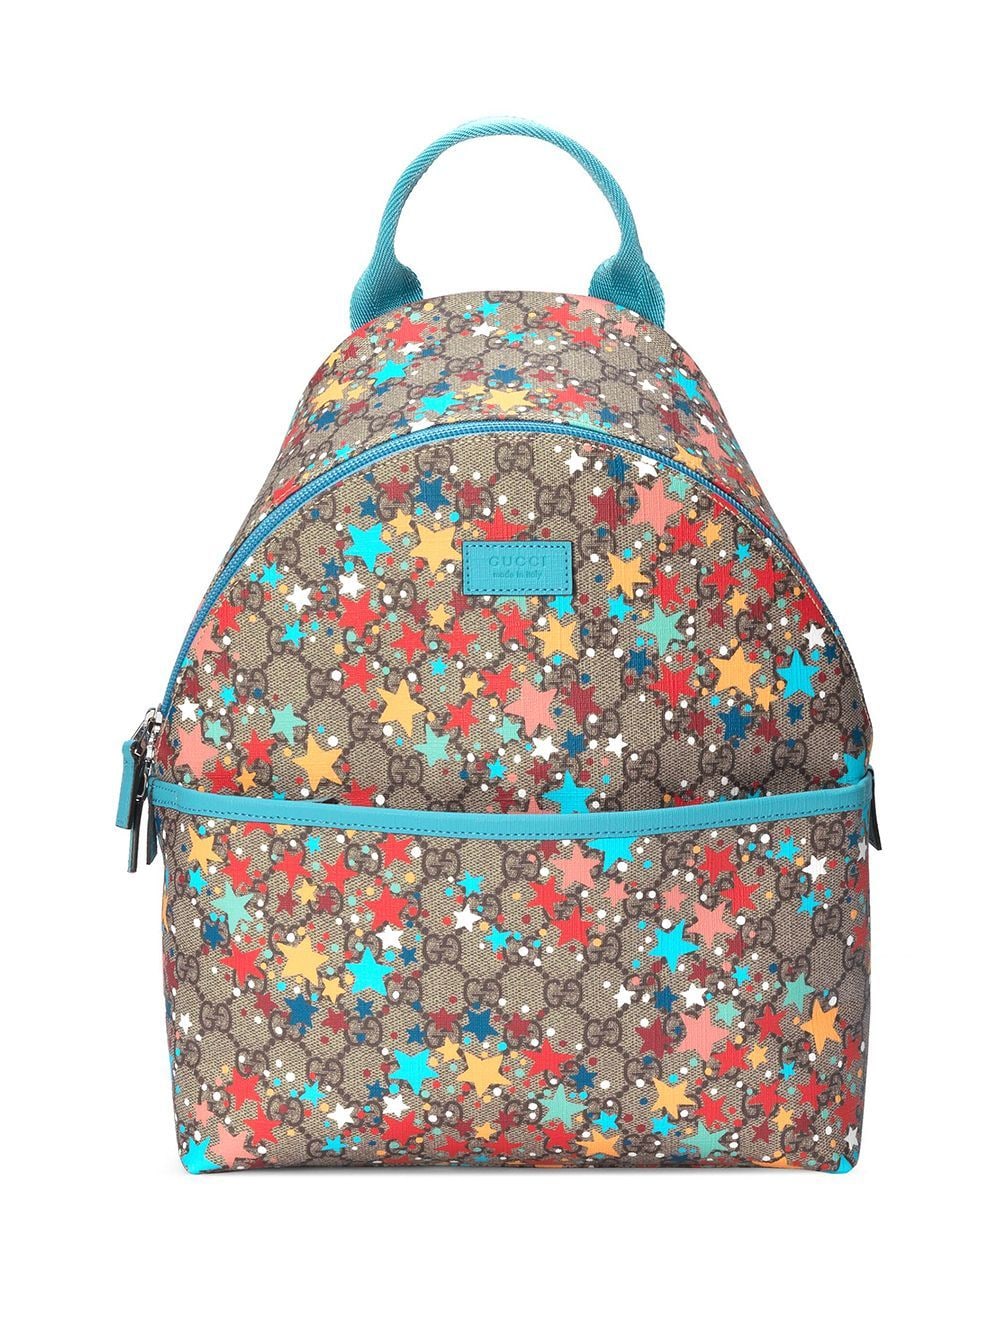 star-print backpack | Gucci Kids 